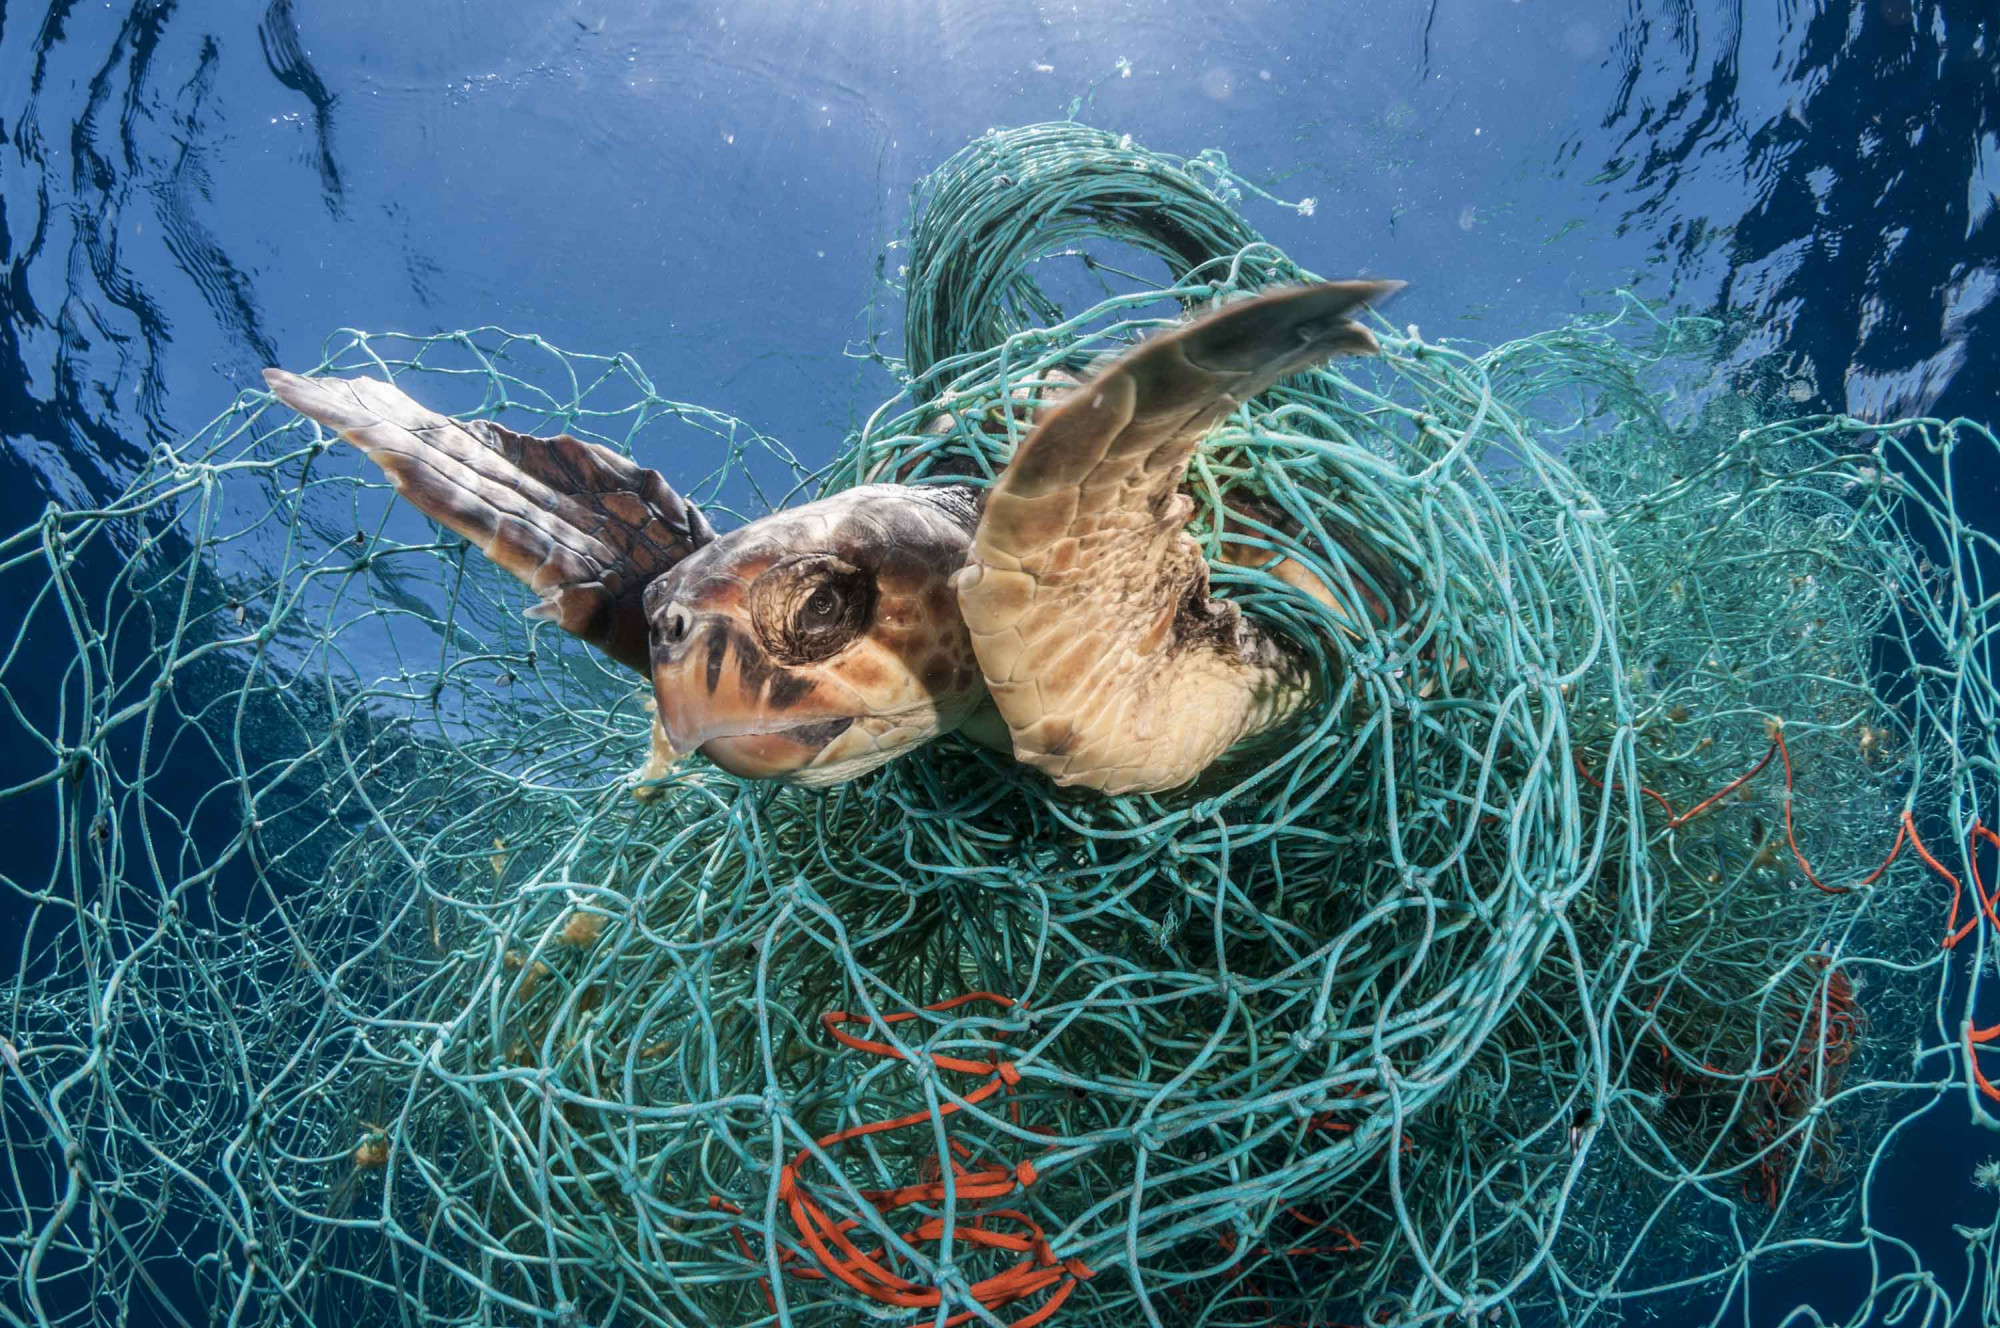 A WWF fotóján a Baleár-szigetek partjainál halászháló fogságába került álcserepesteknős látható